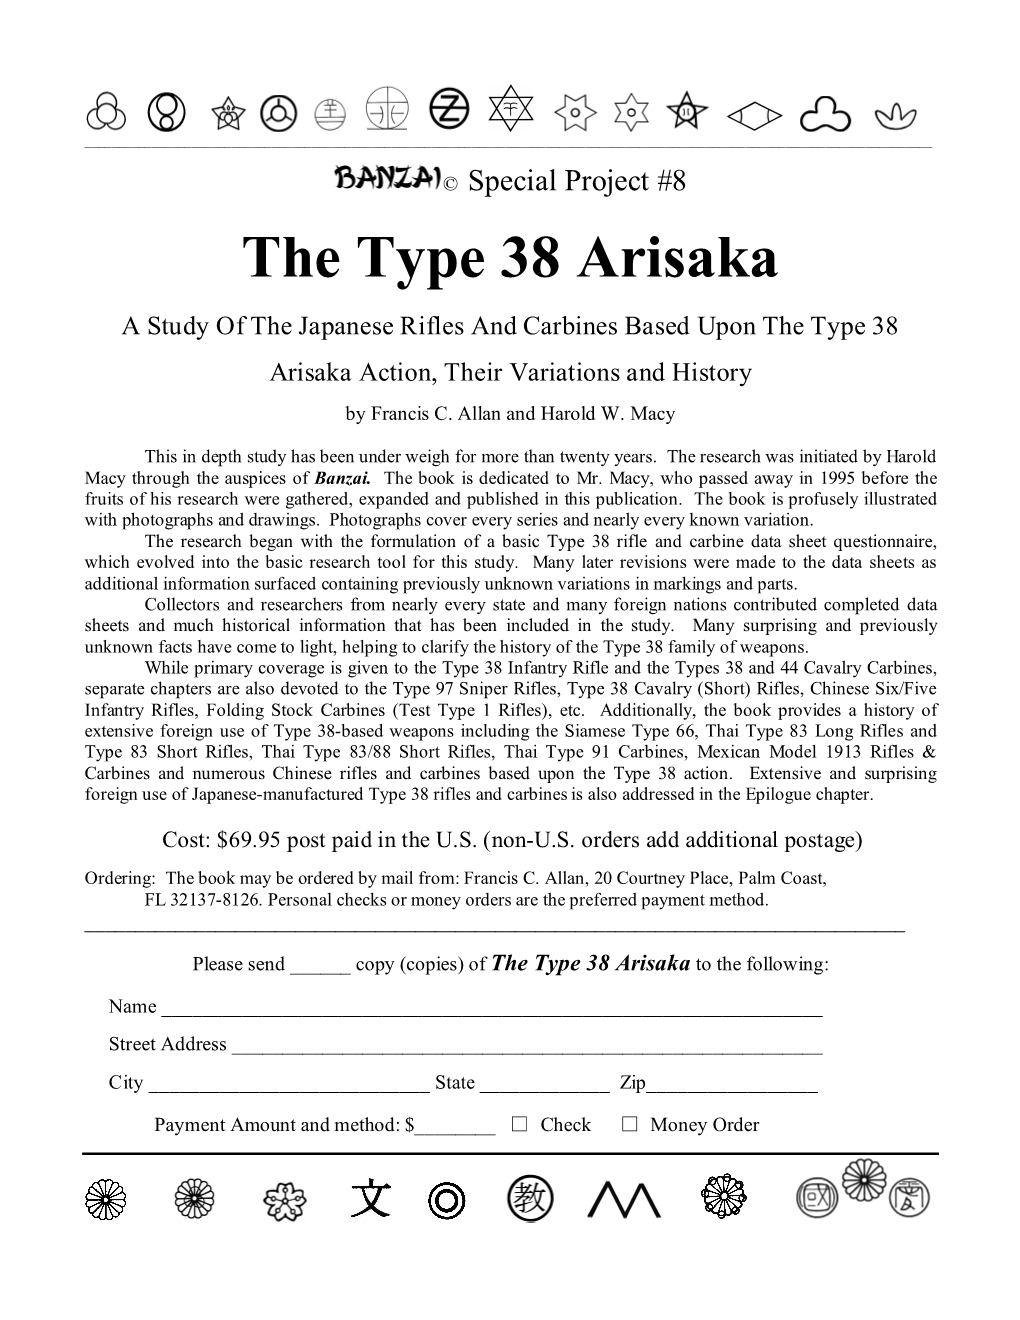 The Type 38 Arisaka